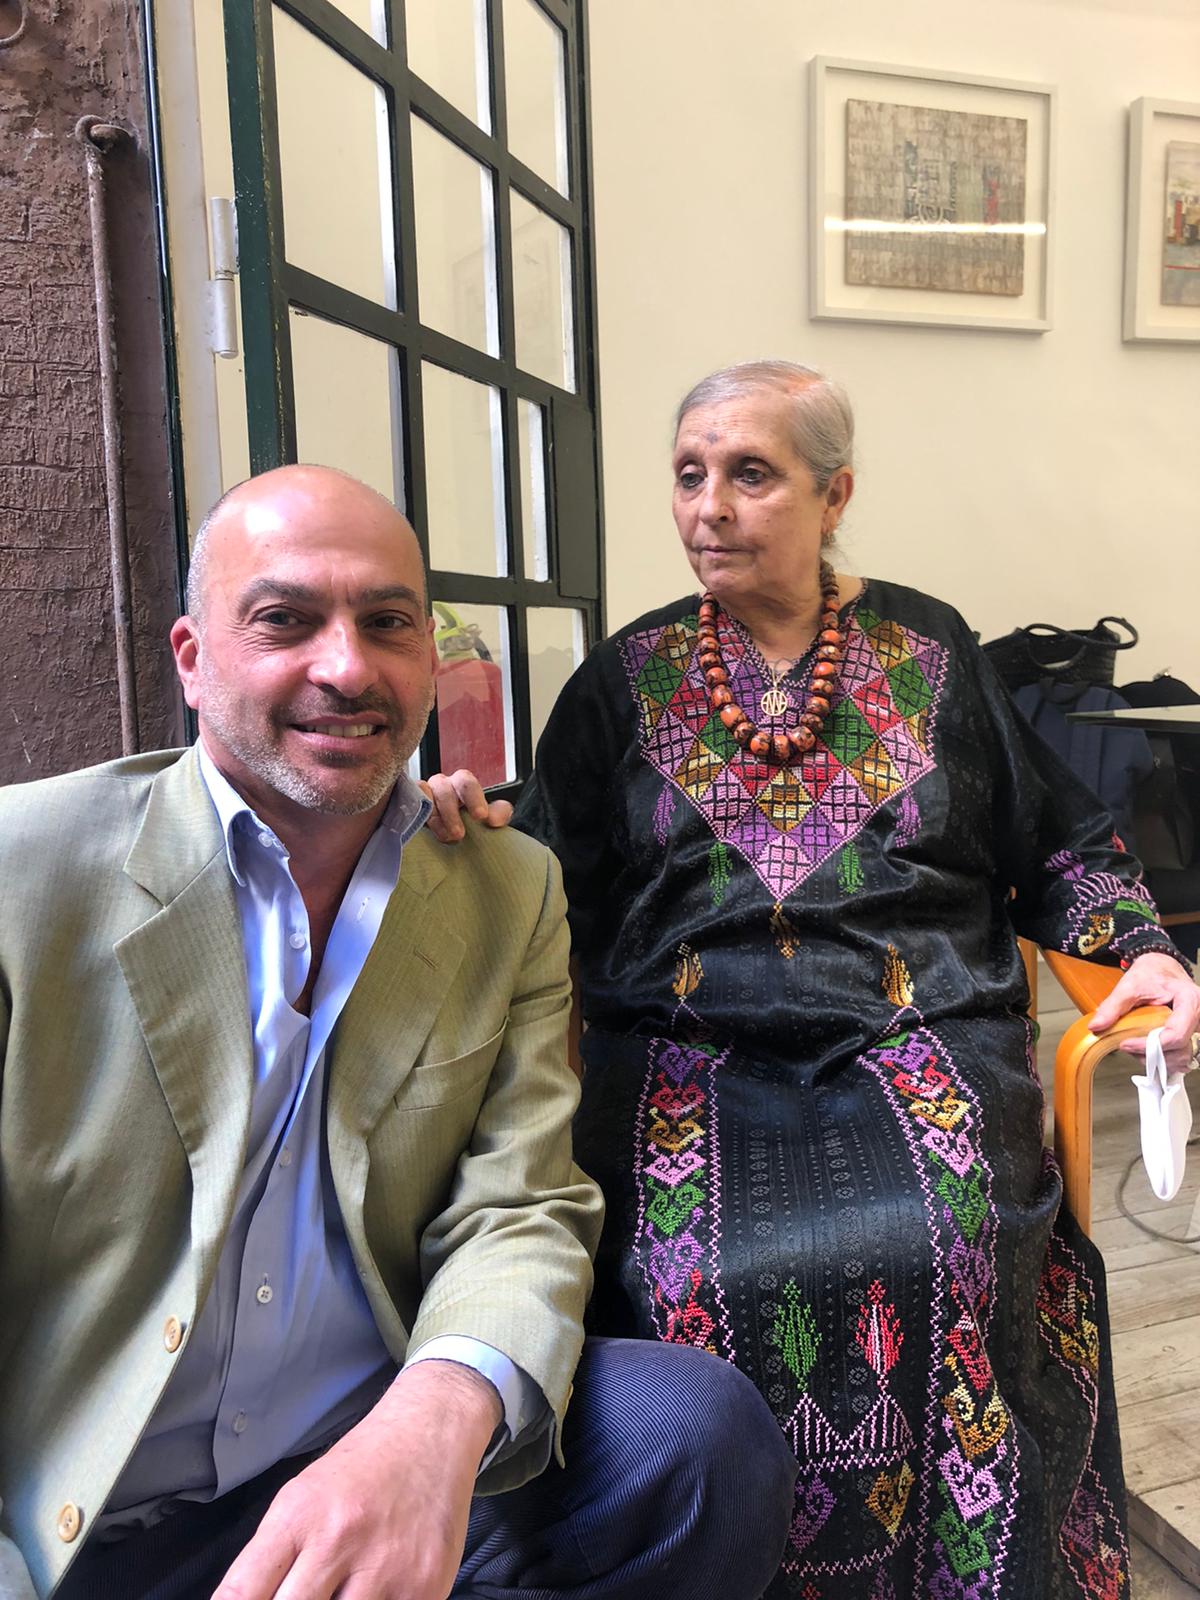 L'artista Anna Paparatti con il mecenate Roberto Bilotti